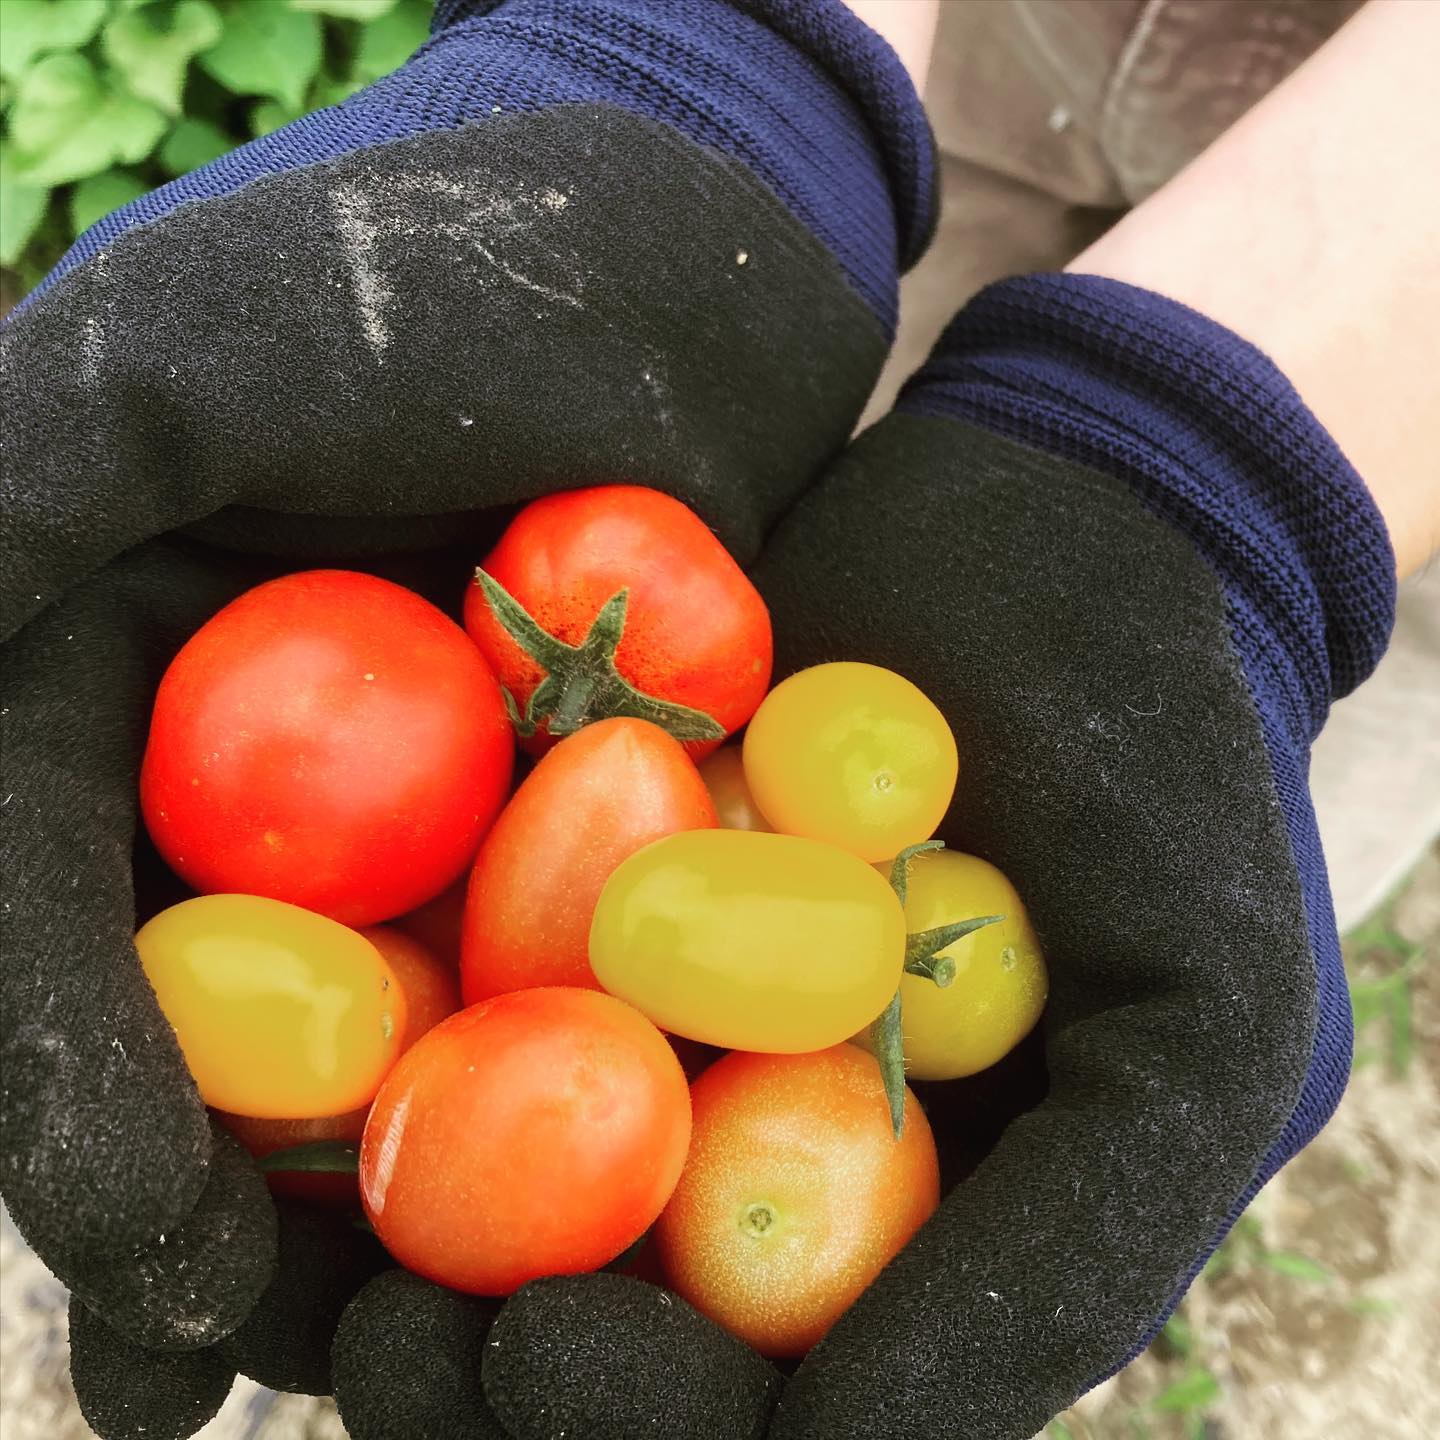 畑作業の水分補給はトマト！少しずつ収穫できるようになってきた。#家庭菜園 #菜園 #貸し農園 #サイエナー #わたしの野菜生活　#トマト - 畑での一コマ